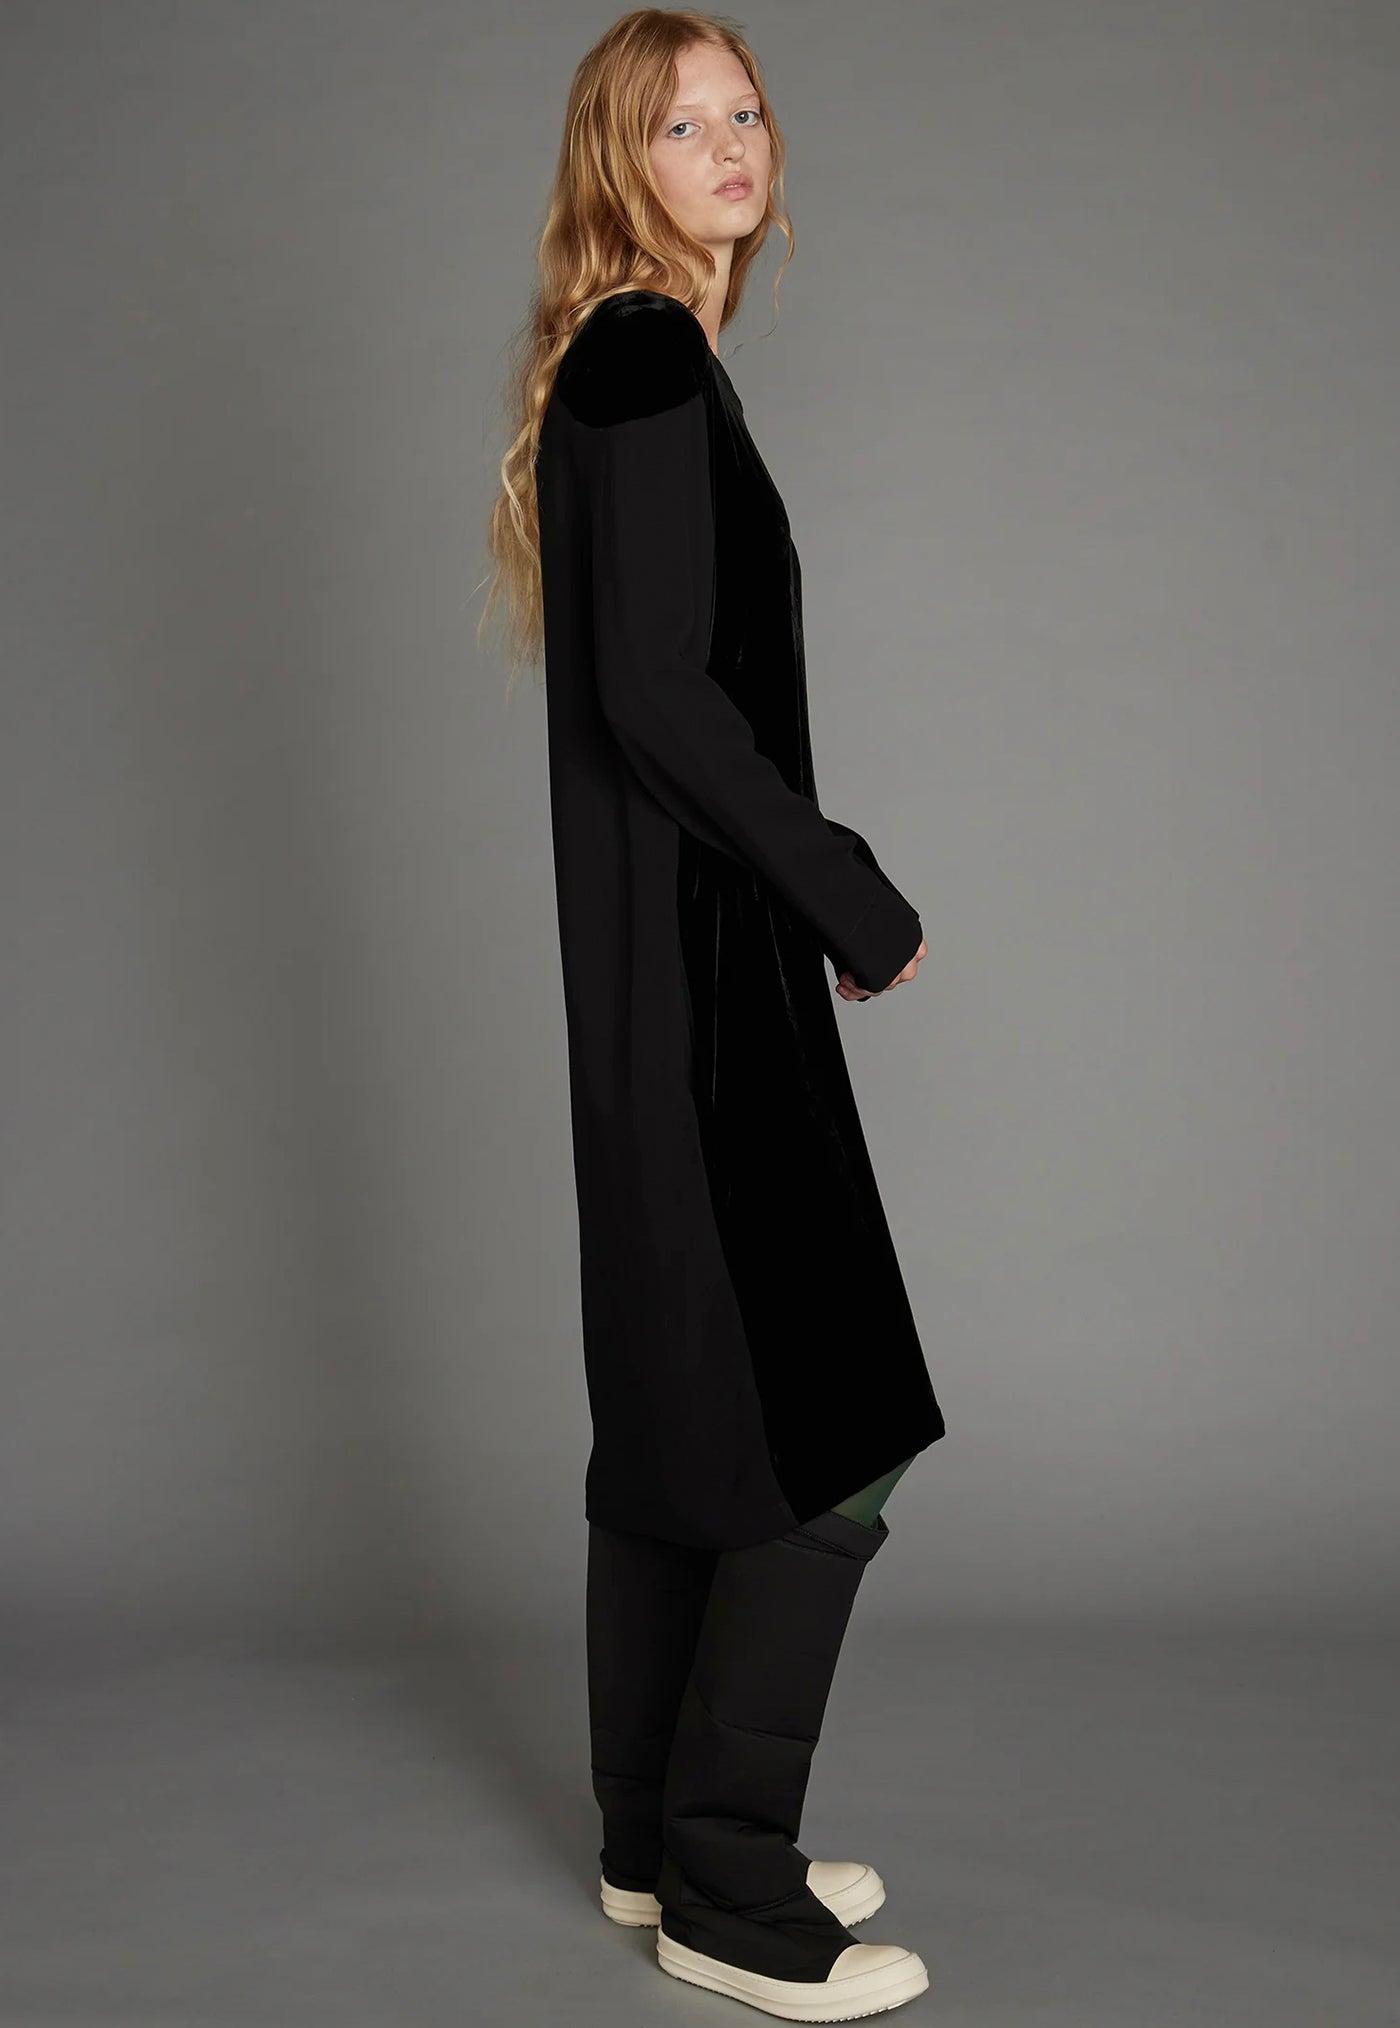 Frame Dress - Black Velvet sold by Angel Divine